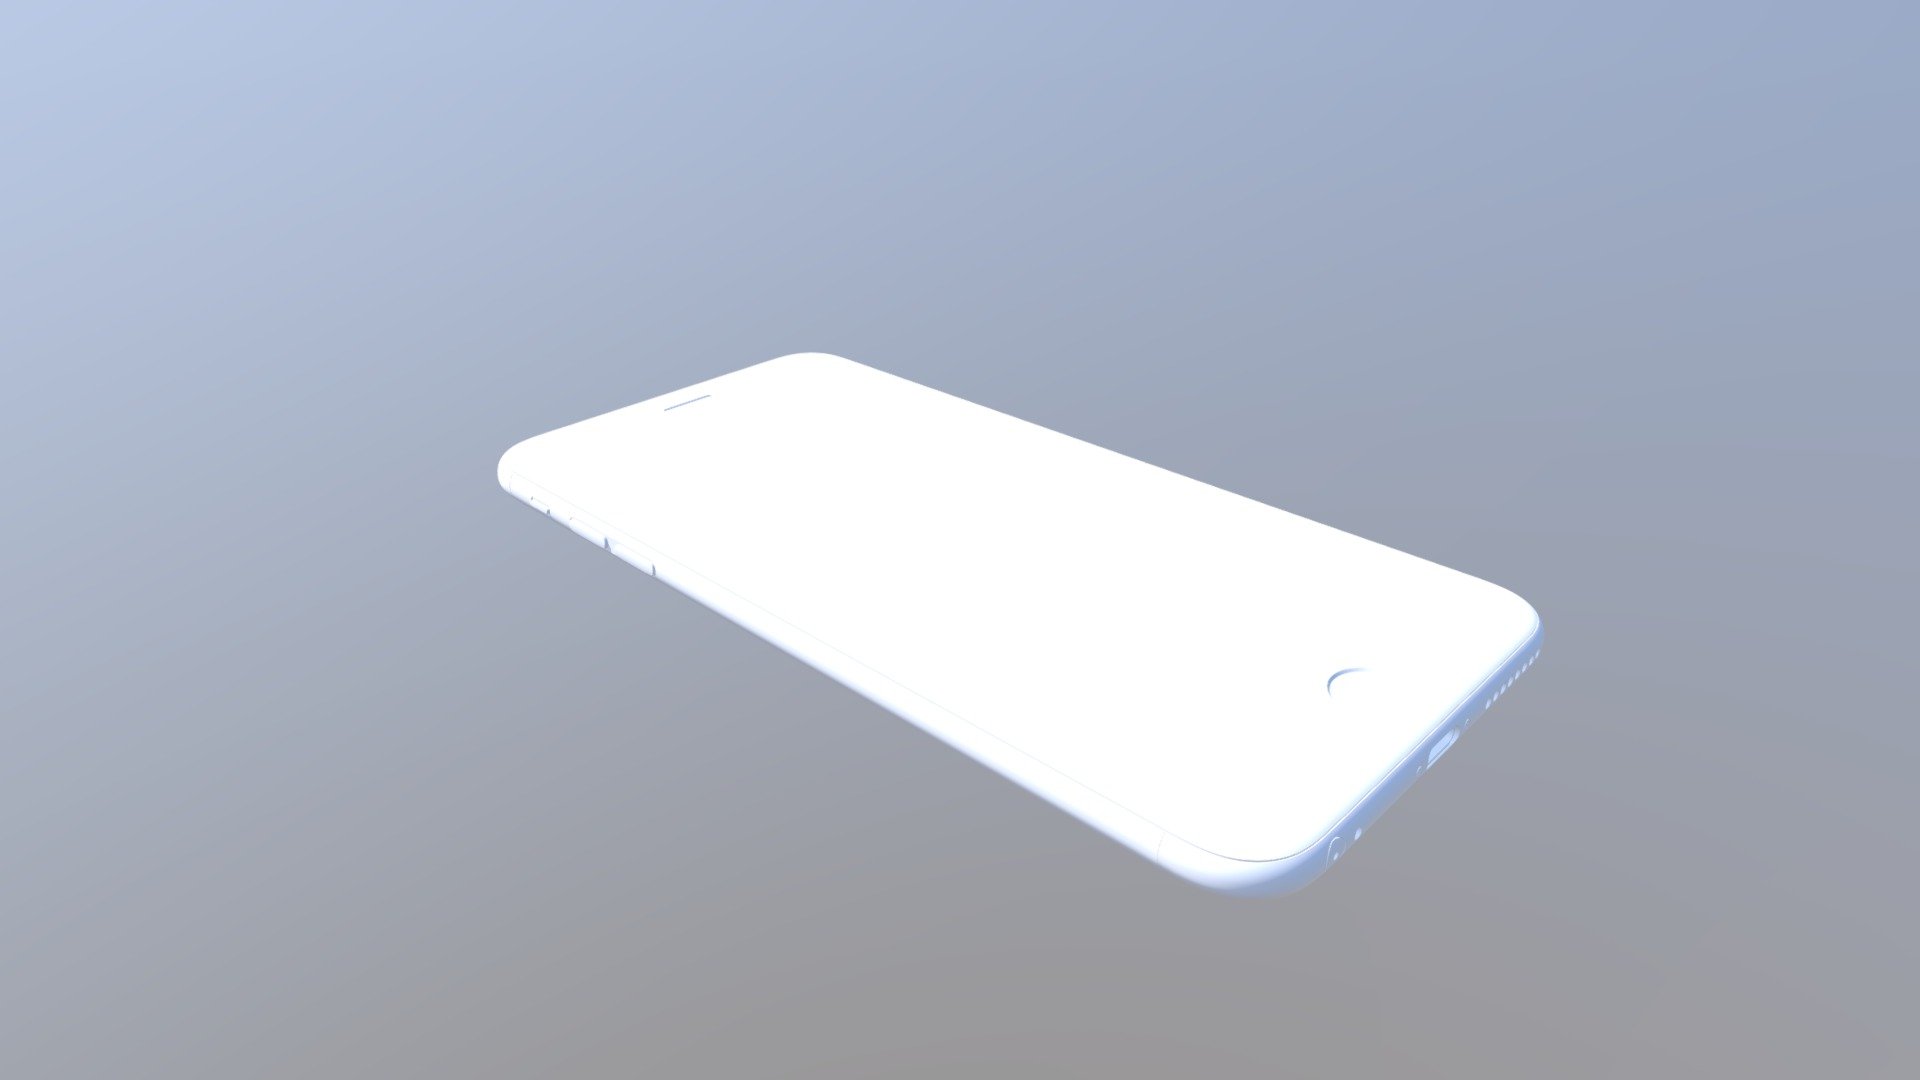 iPhone 6 Plus - original Apple dimensions